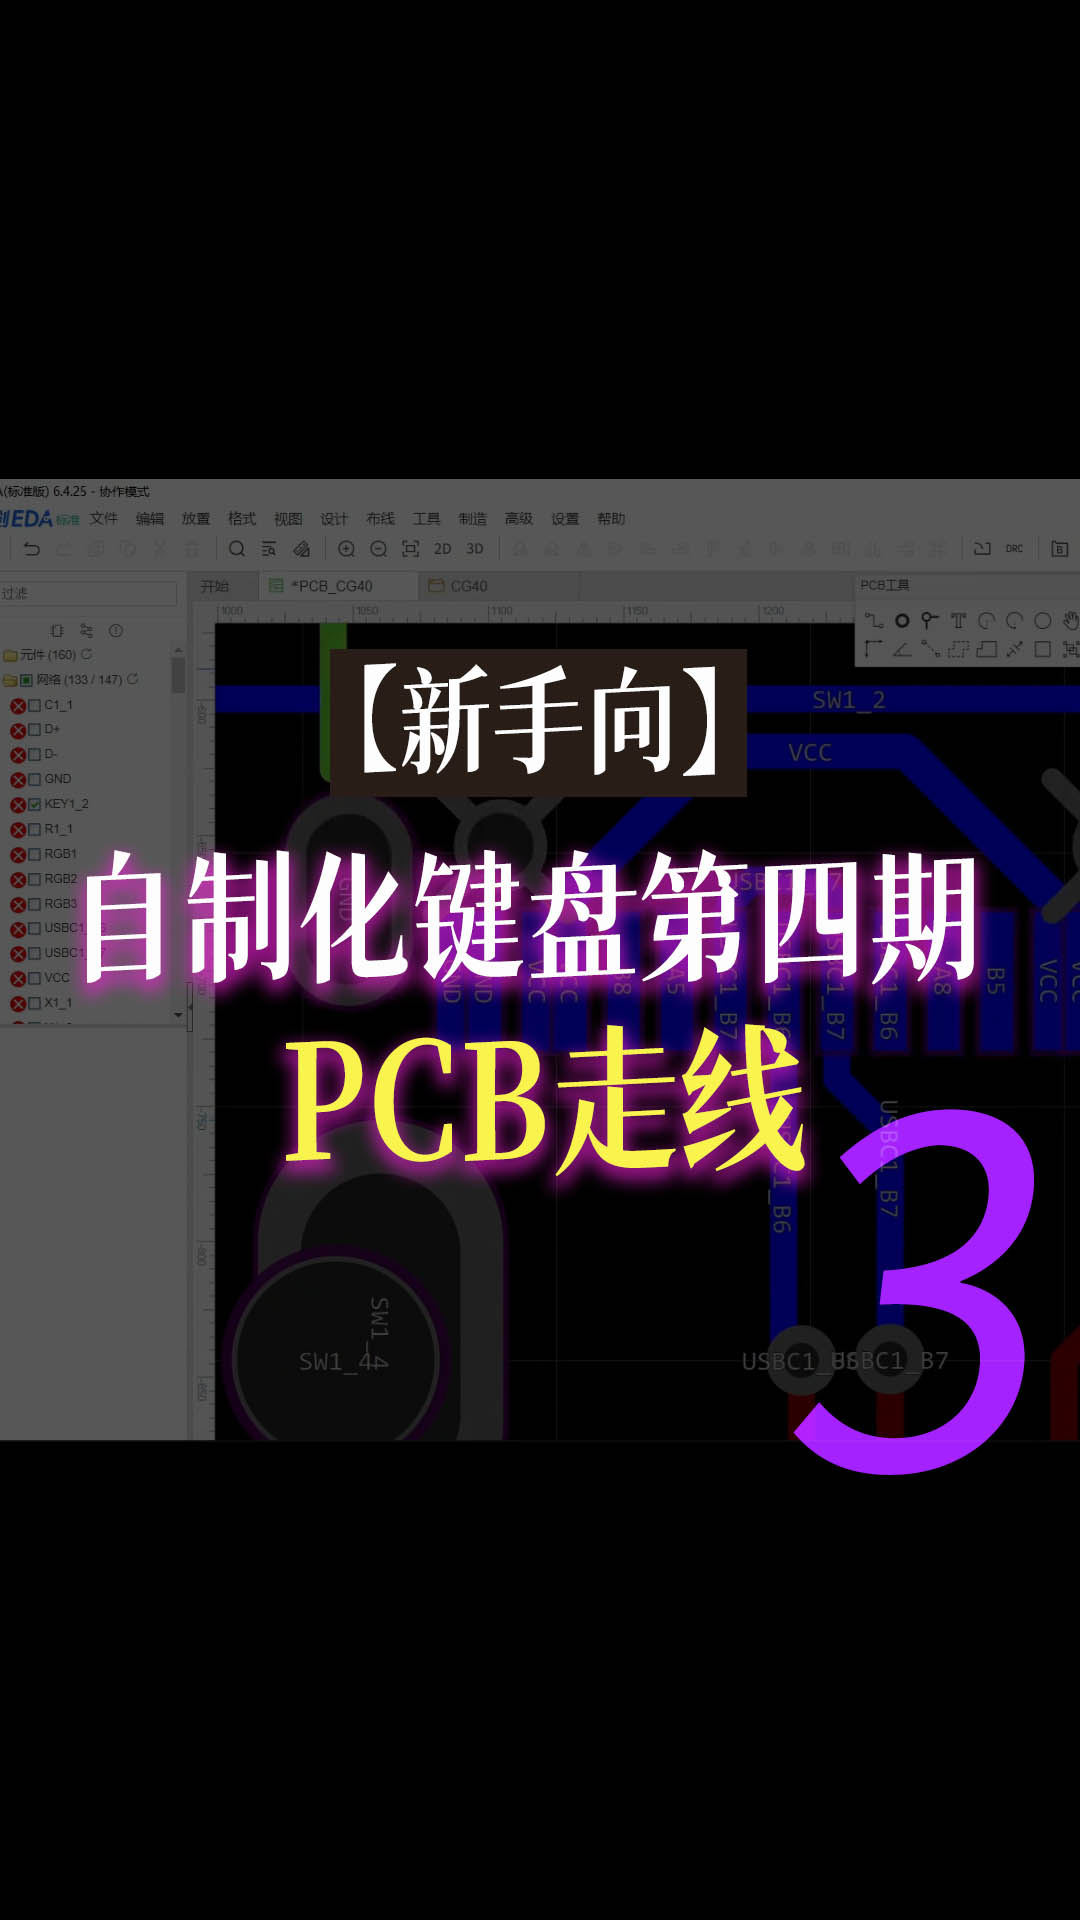 【新手向】自制化键盘第四期—PCB走线3#跟着UP主一起创作吧 #pcb设计 